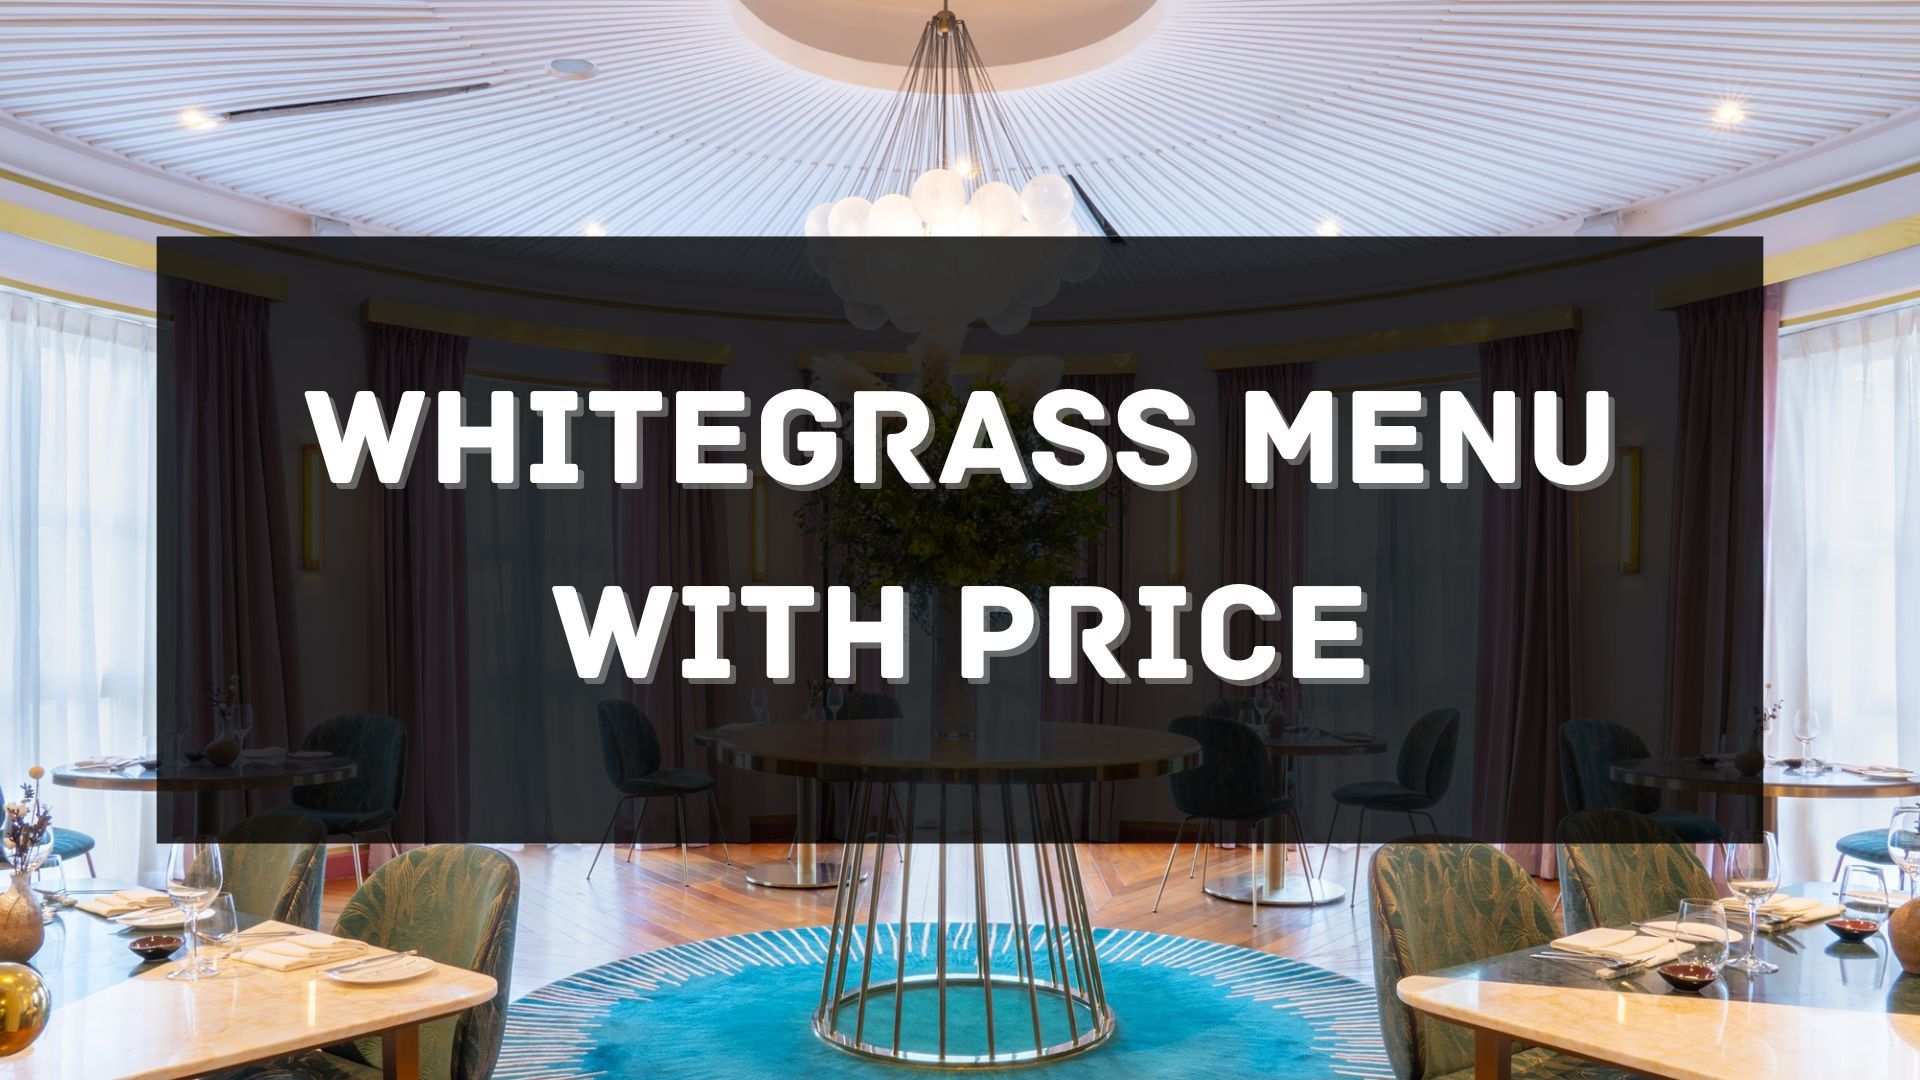 whitegrass menu with price singapore